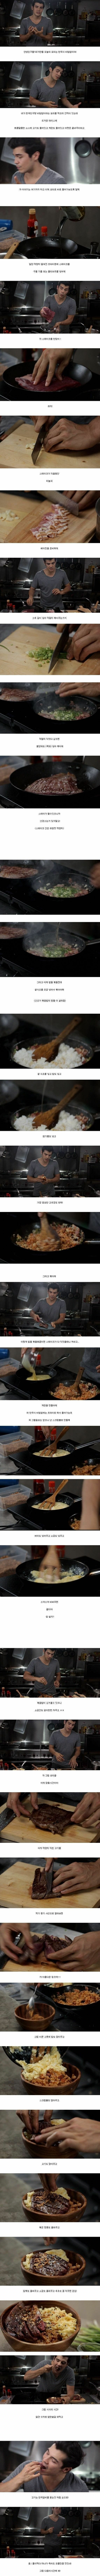 외국인이 만든 비빔밥